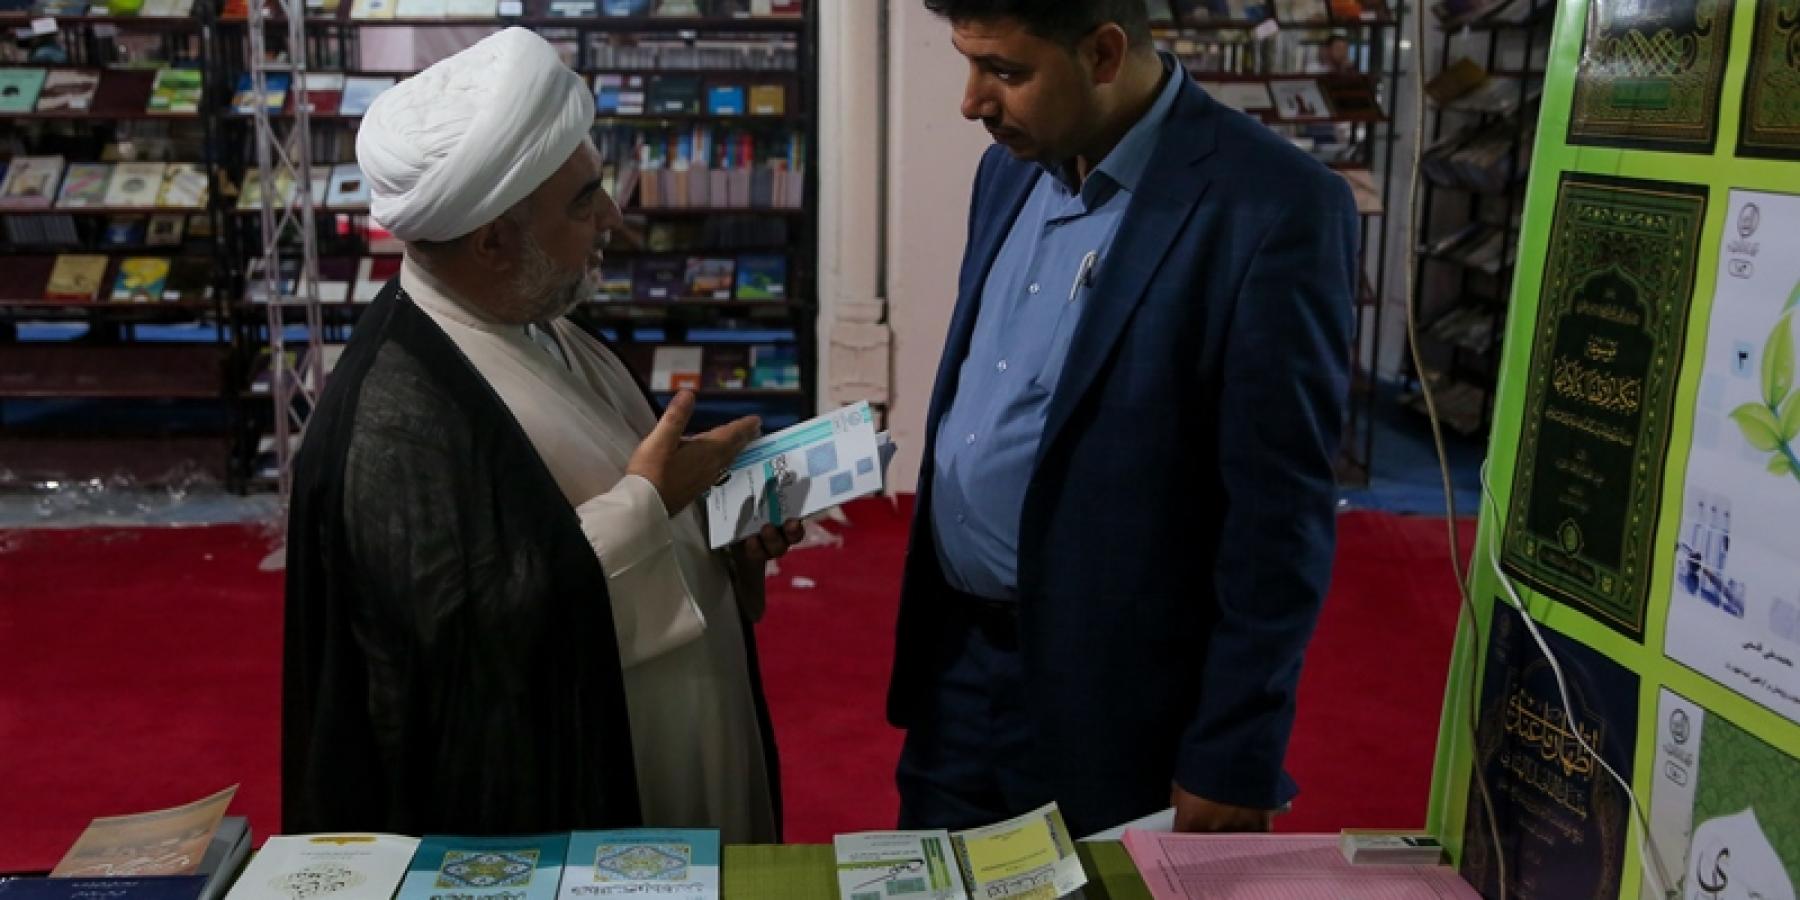 مكتبة الروضة الحيدرية ترفد أجنحتها بأكثر من 2500 كتاب من معرض طهران الدولي